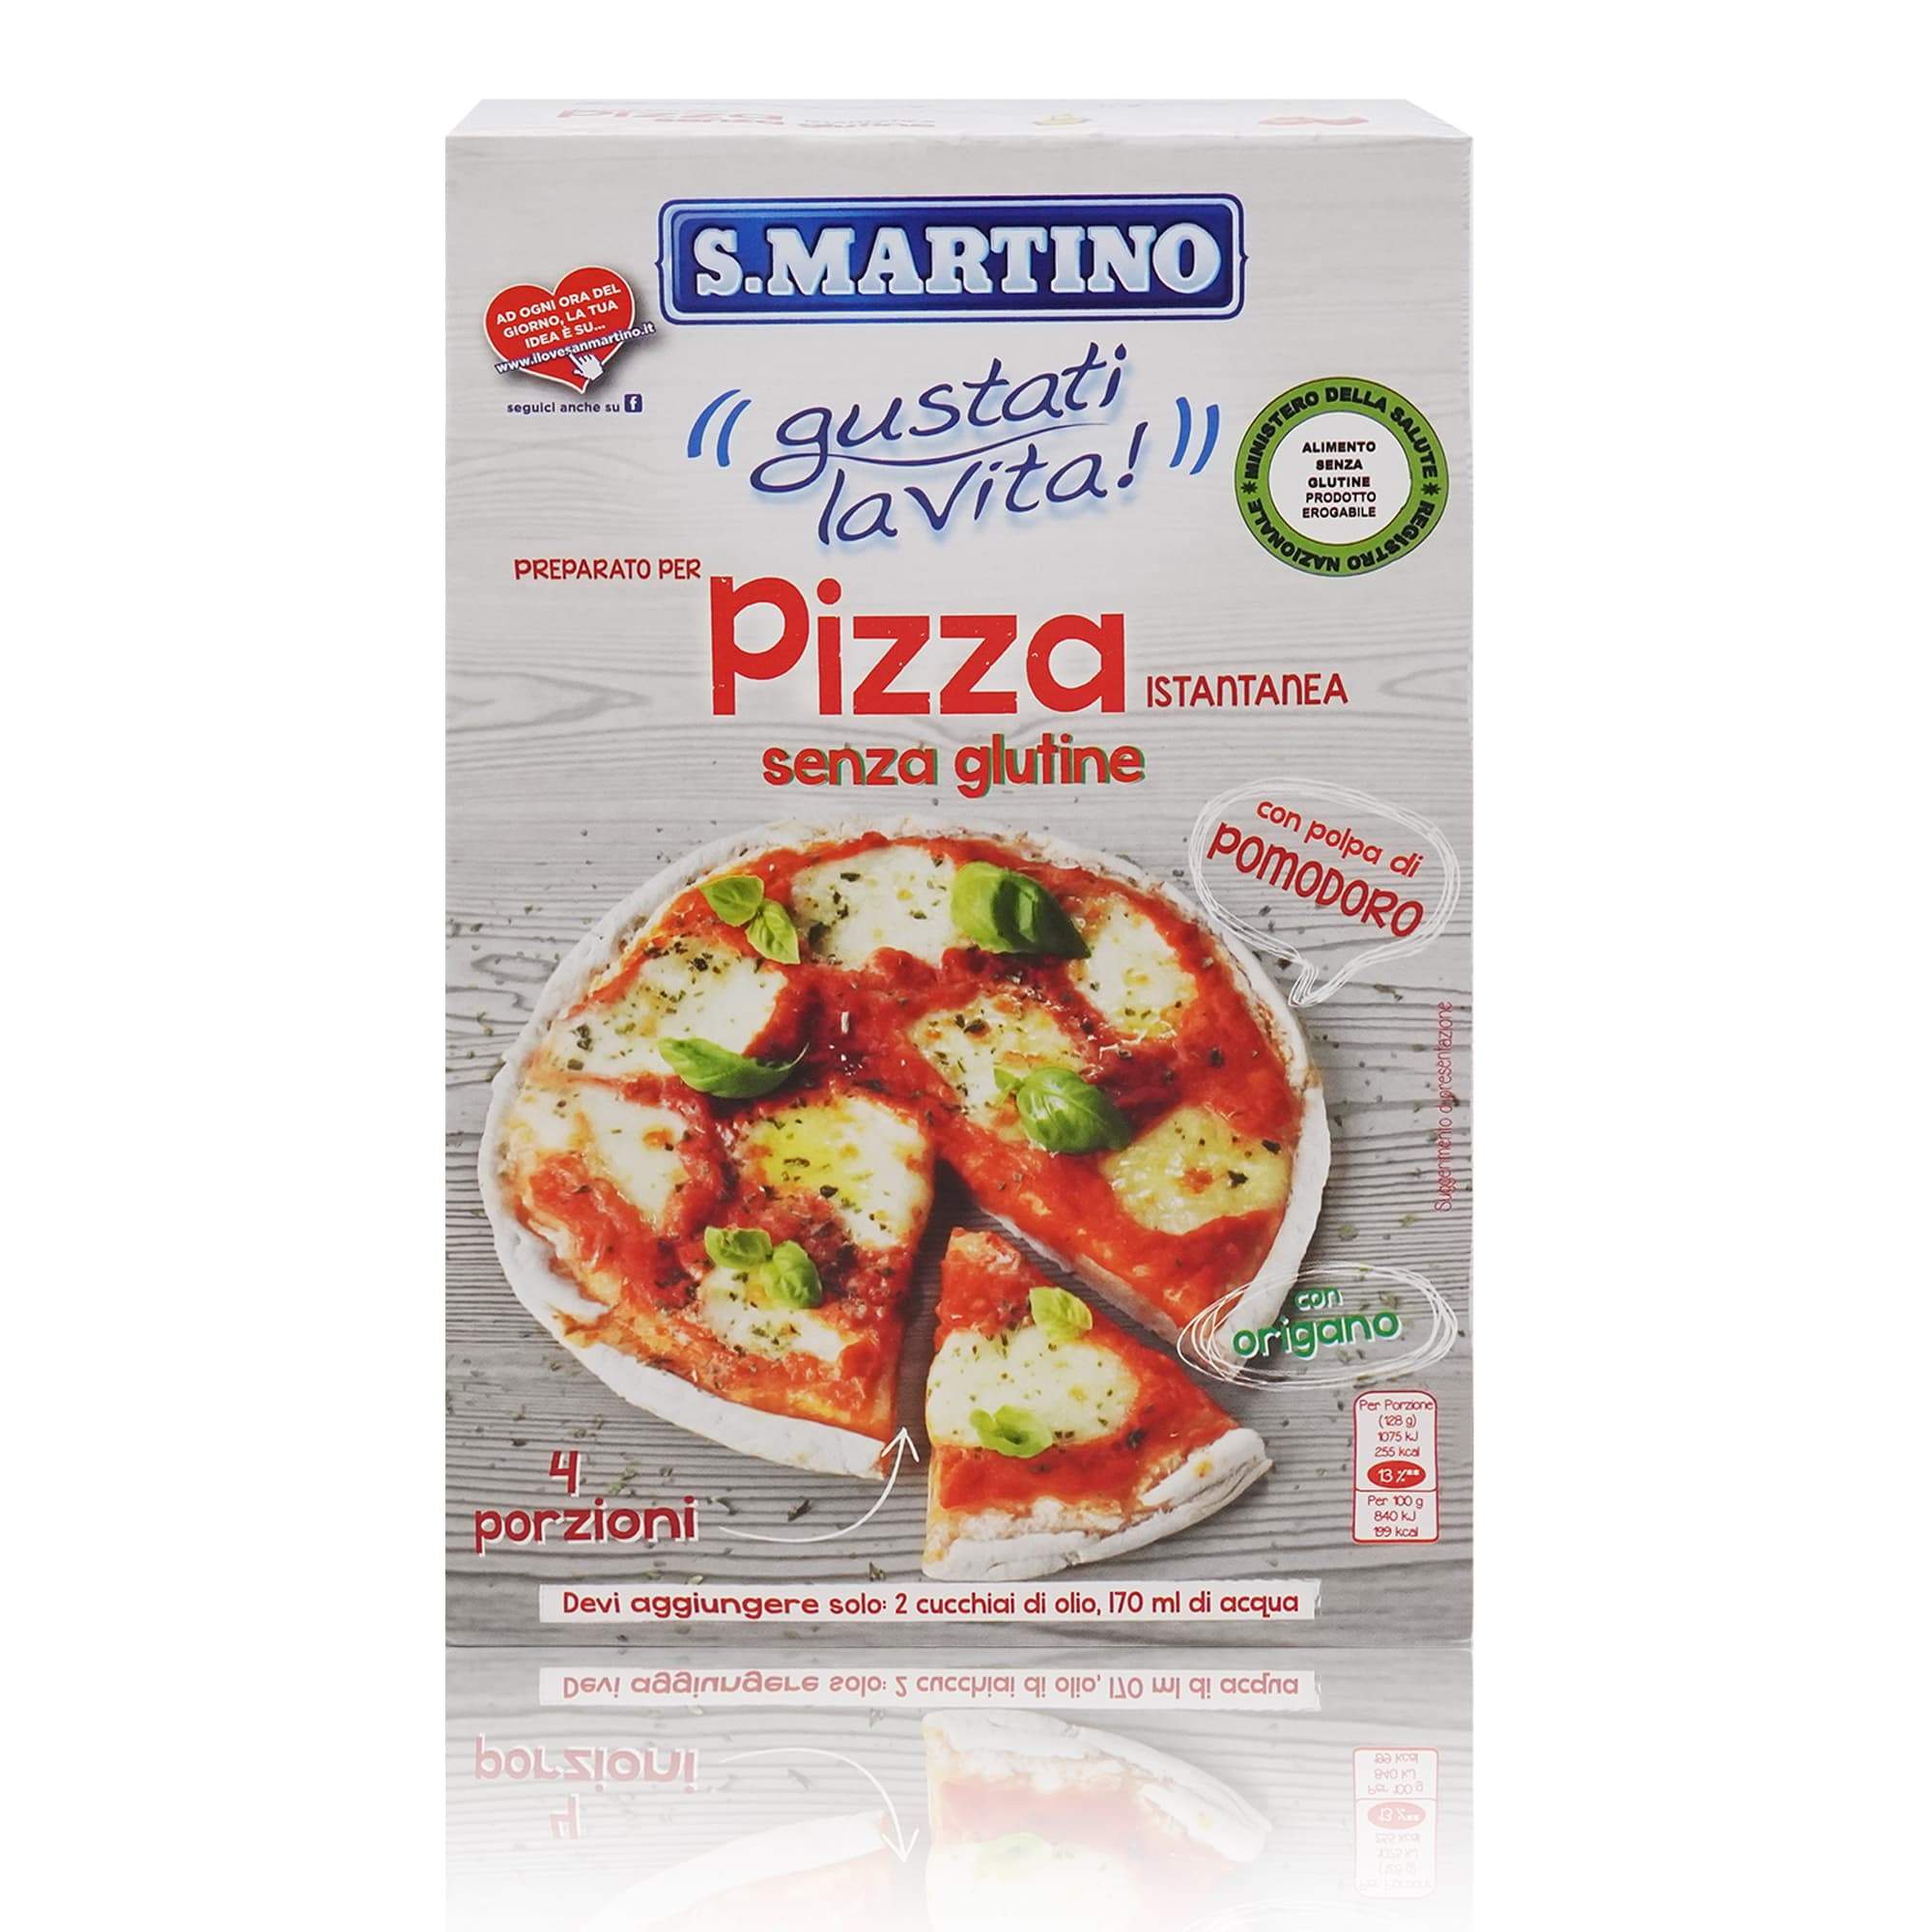 S.MARTINO Preparato per Pizza senza glutine – Pizzateigmischung Glutenfrei - 0,460kg - italienisch-einkaufen.de